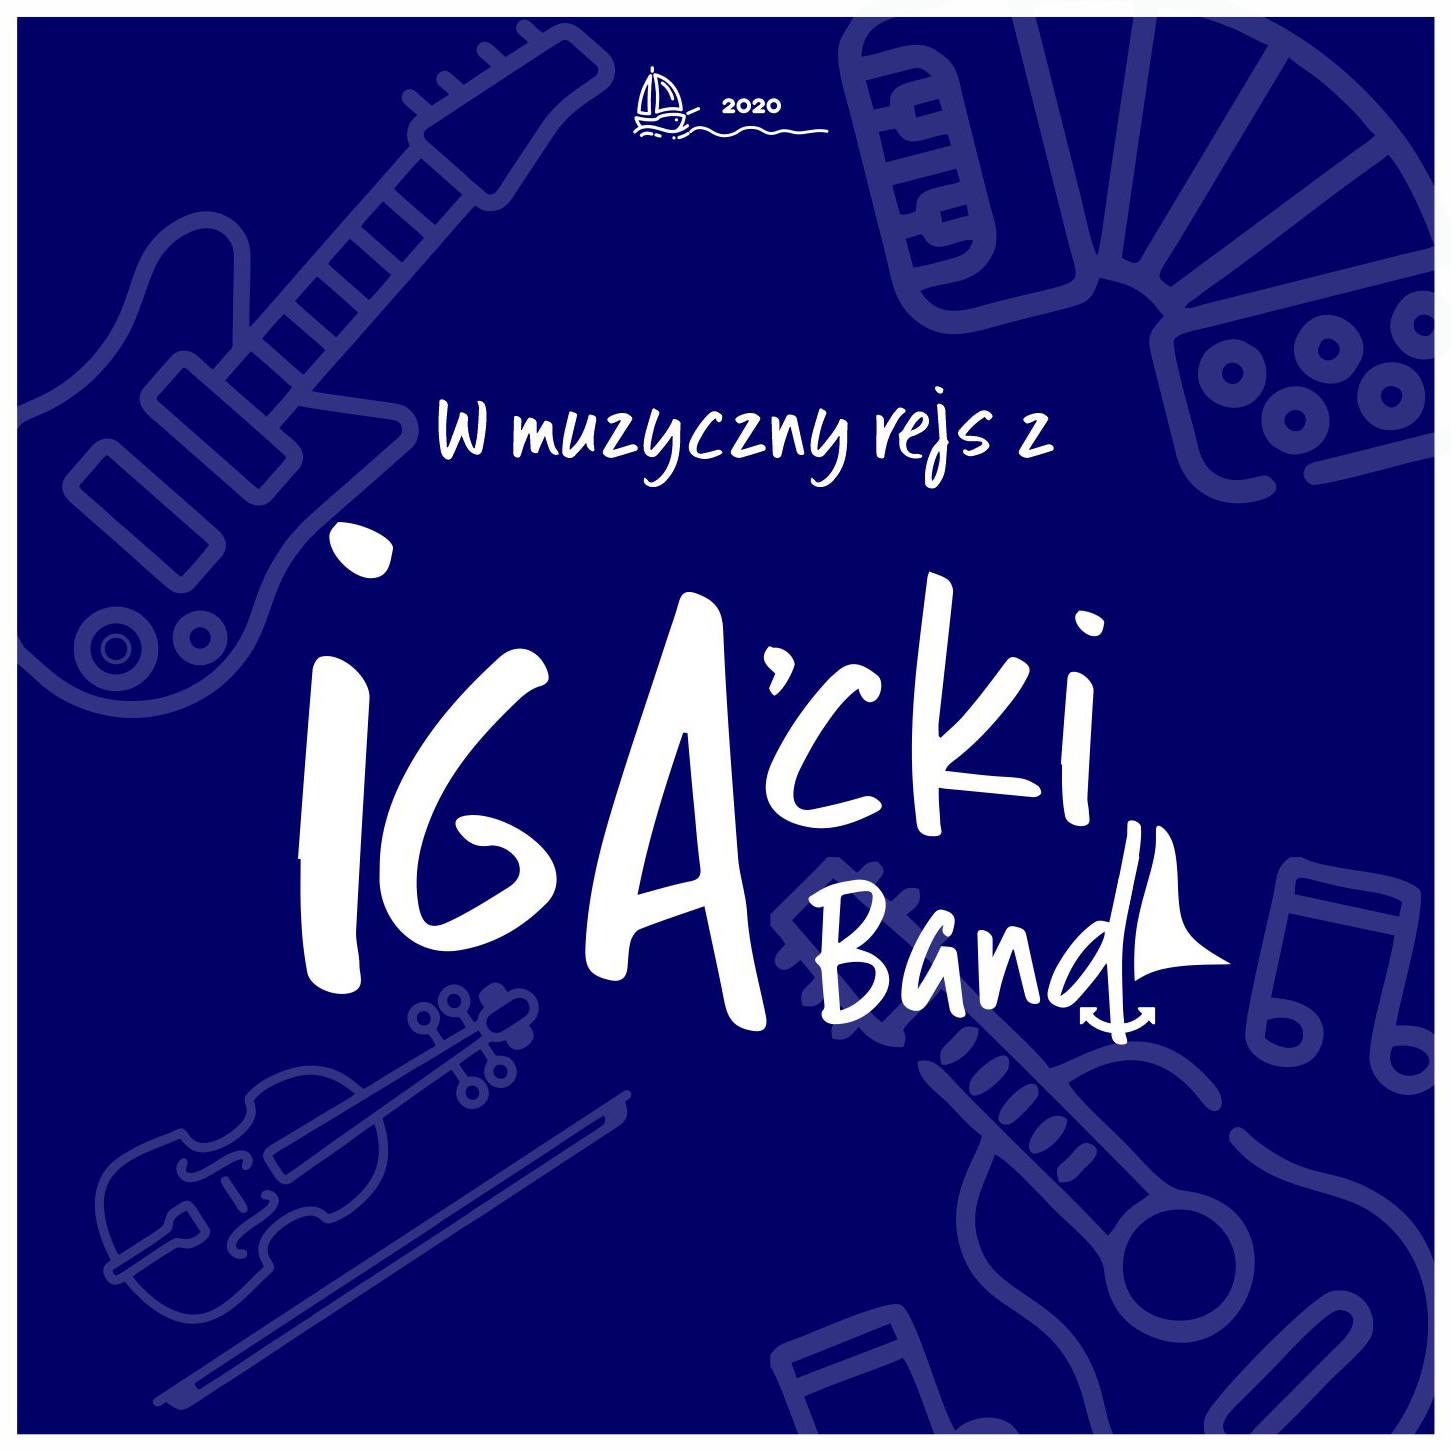 IGA’cki Band wkrótce rozpocznie prace nad swoją pierwszą płytą, dostępną za darmo on-line!